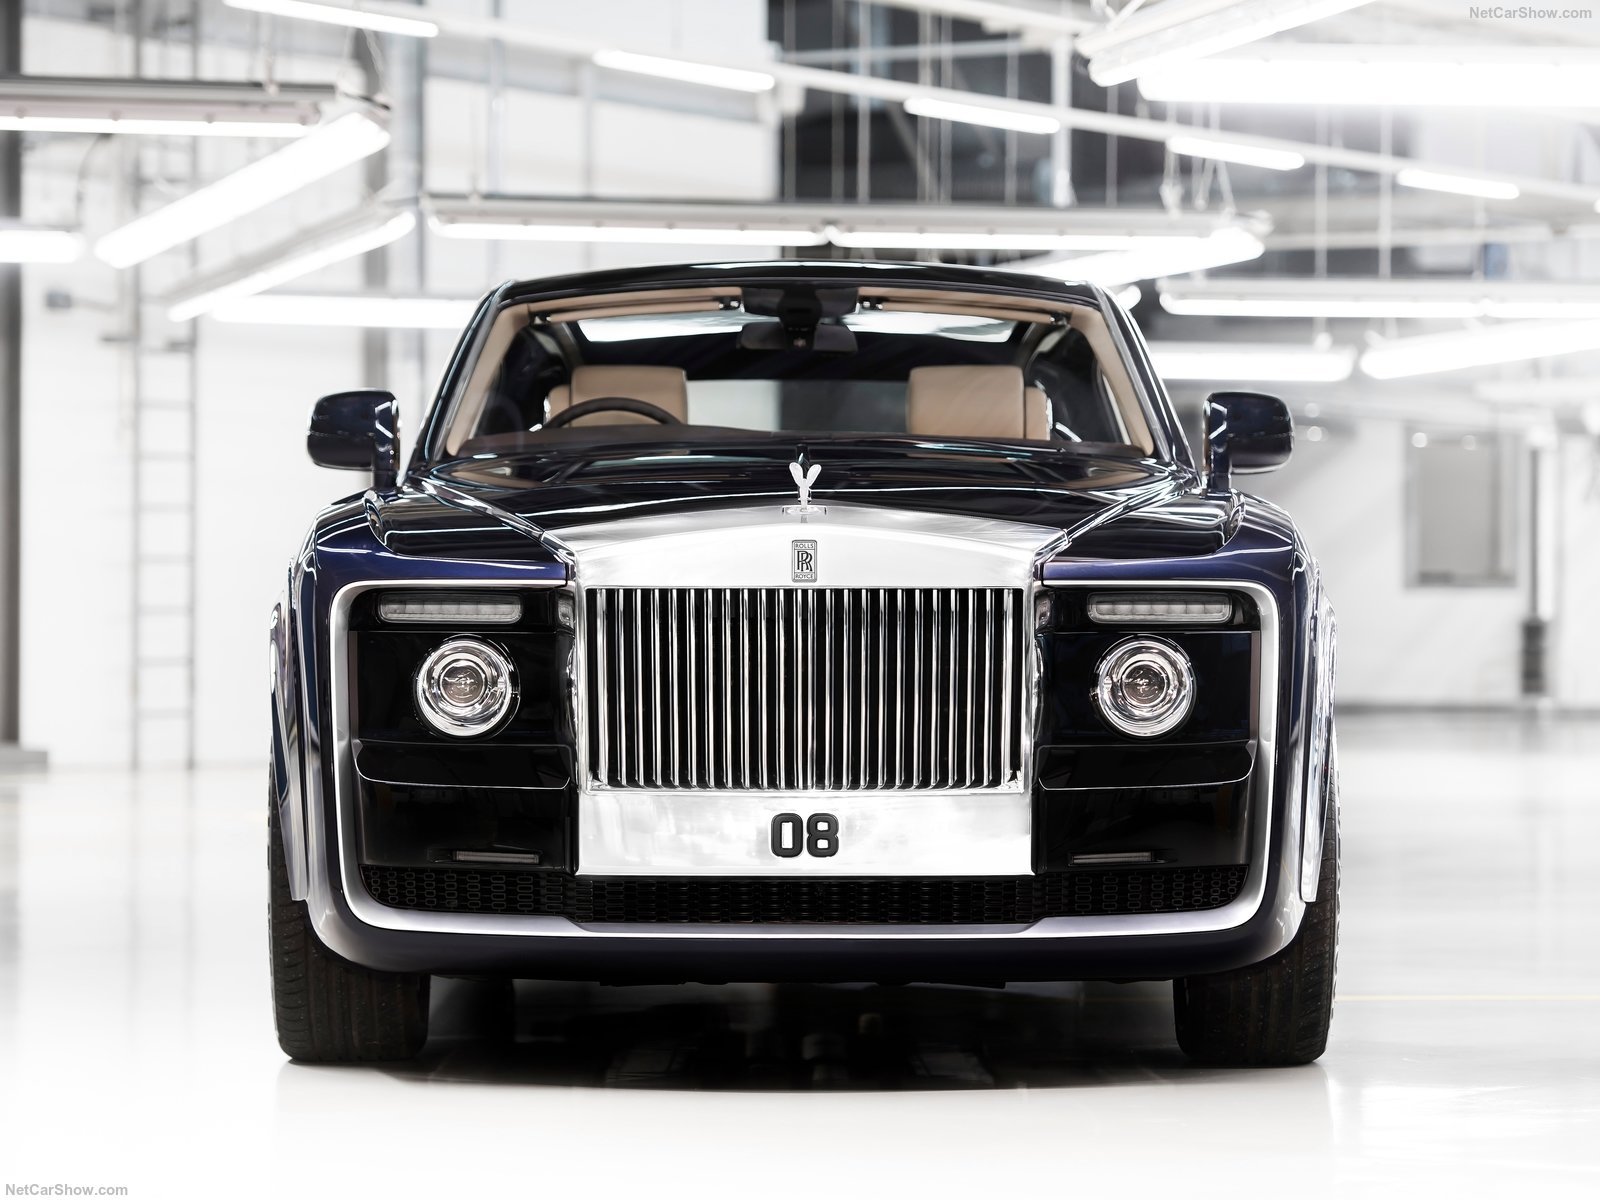 Rolls-Royce създаде най-скъпия нов автомобил - Sweptail